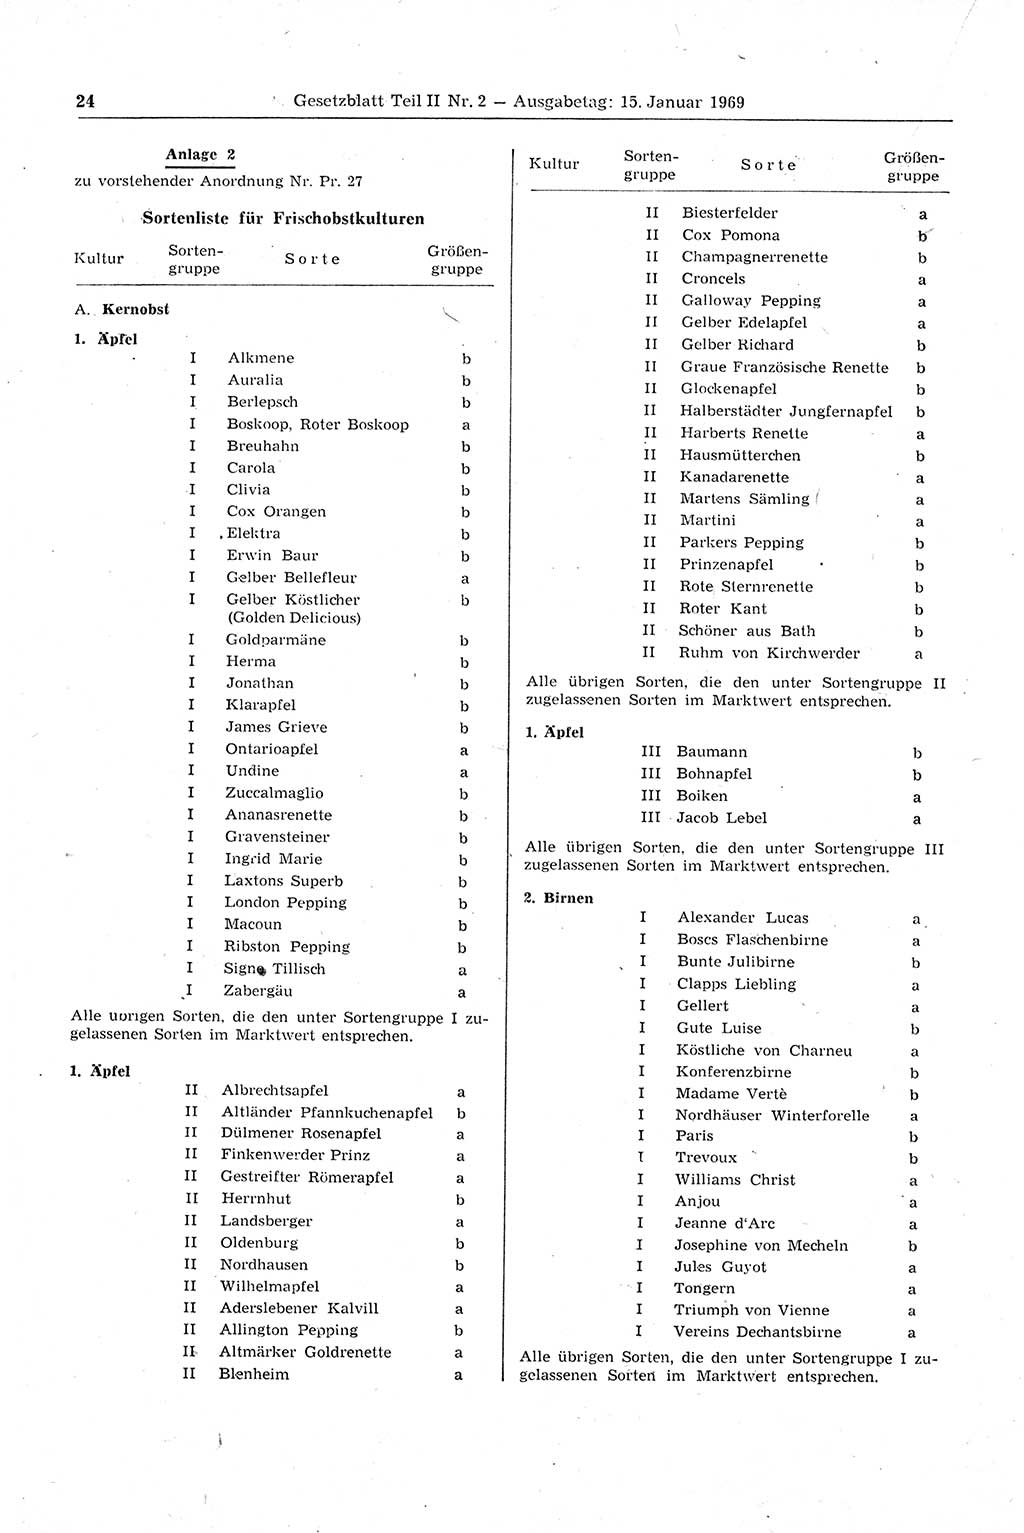 Gesetzblatt (GBl.) der Deutschen Demokratischen Republik (DDR) Teil ⅠⅠ 1969, Seite 24 (GBl. DDR ⅠⅠ 1969, S. 24)